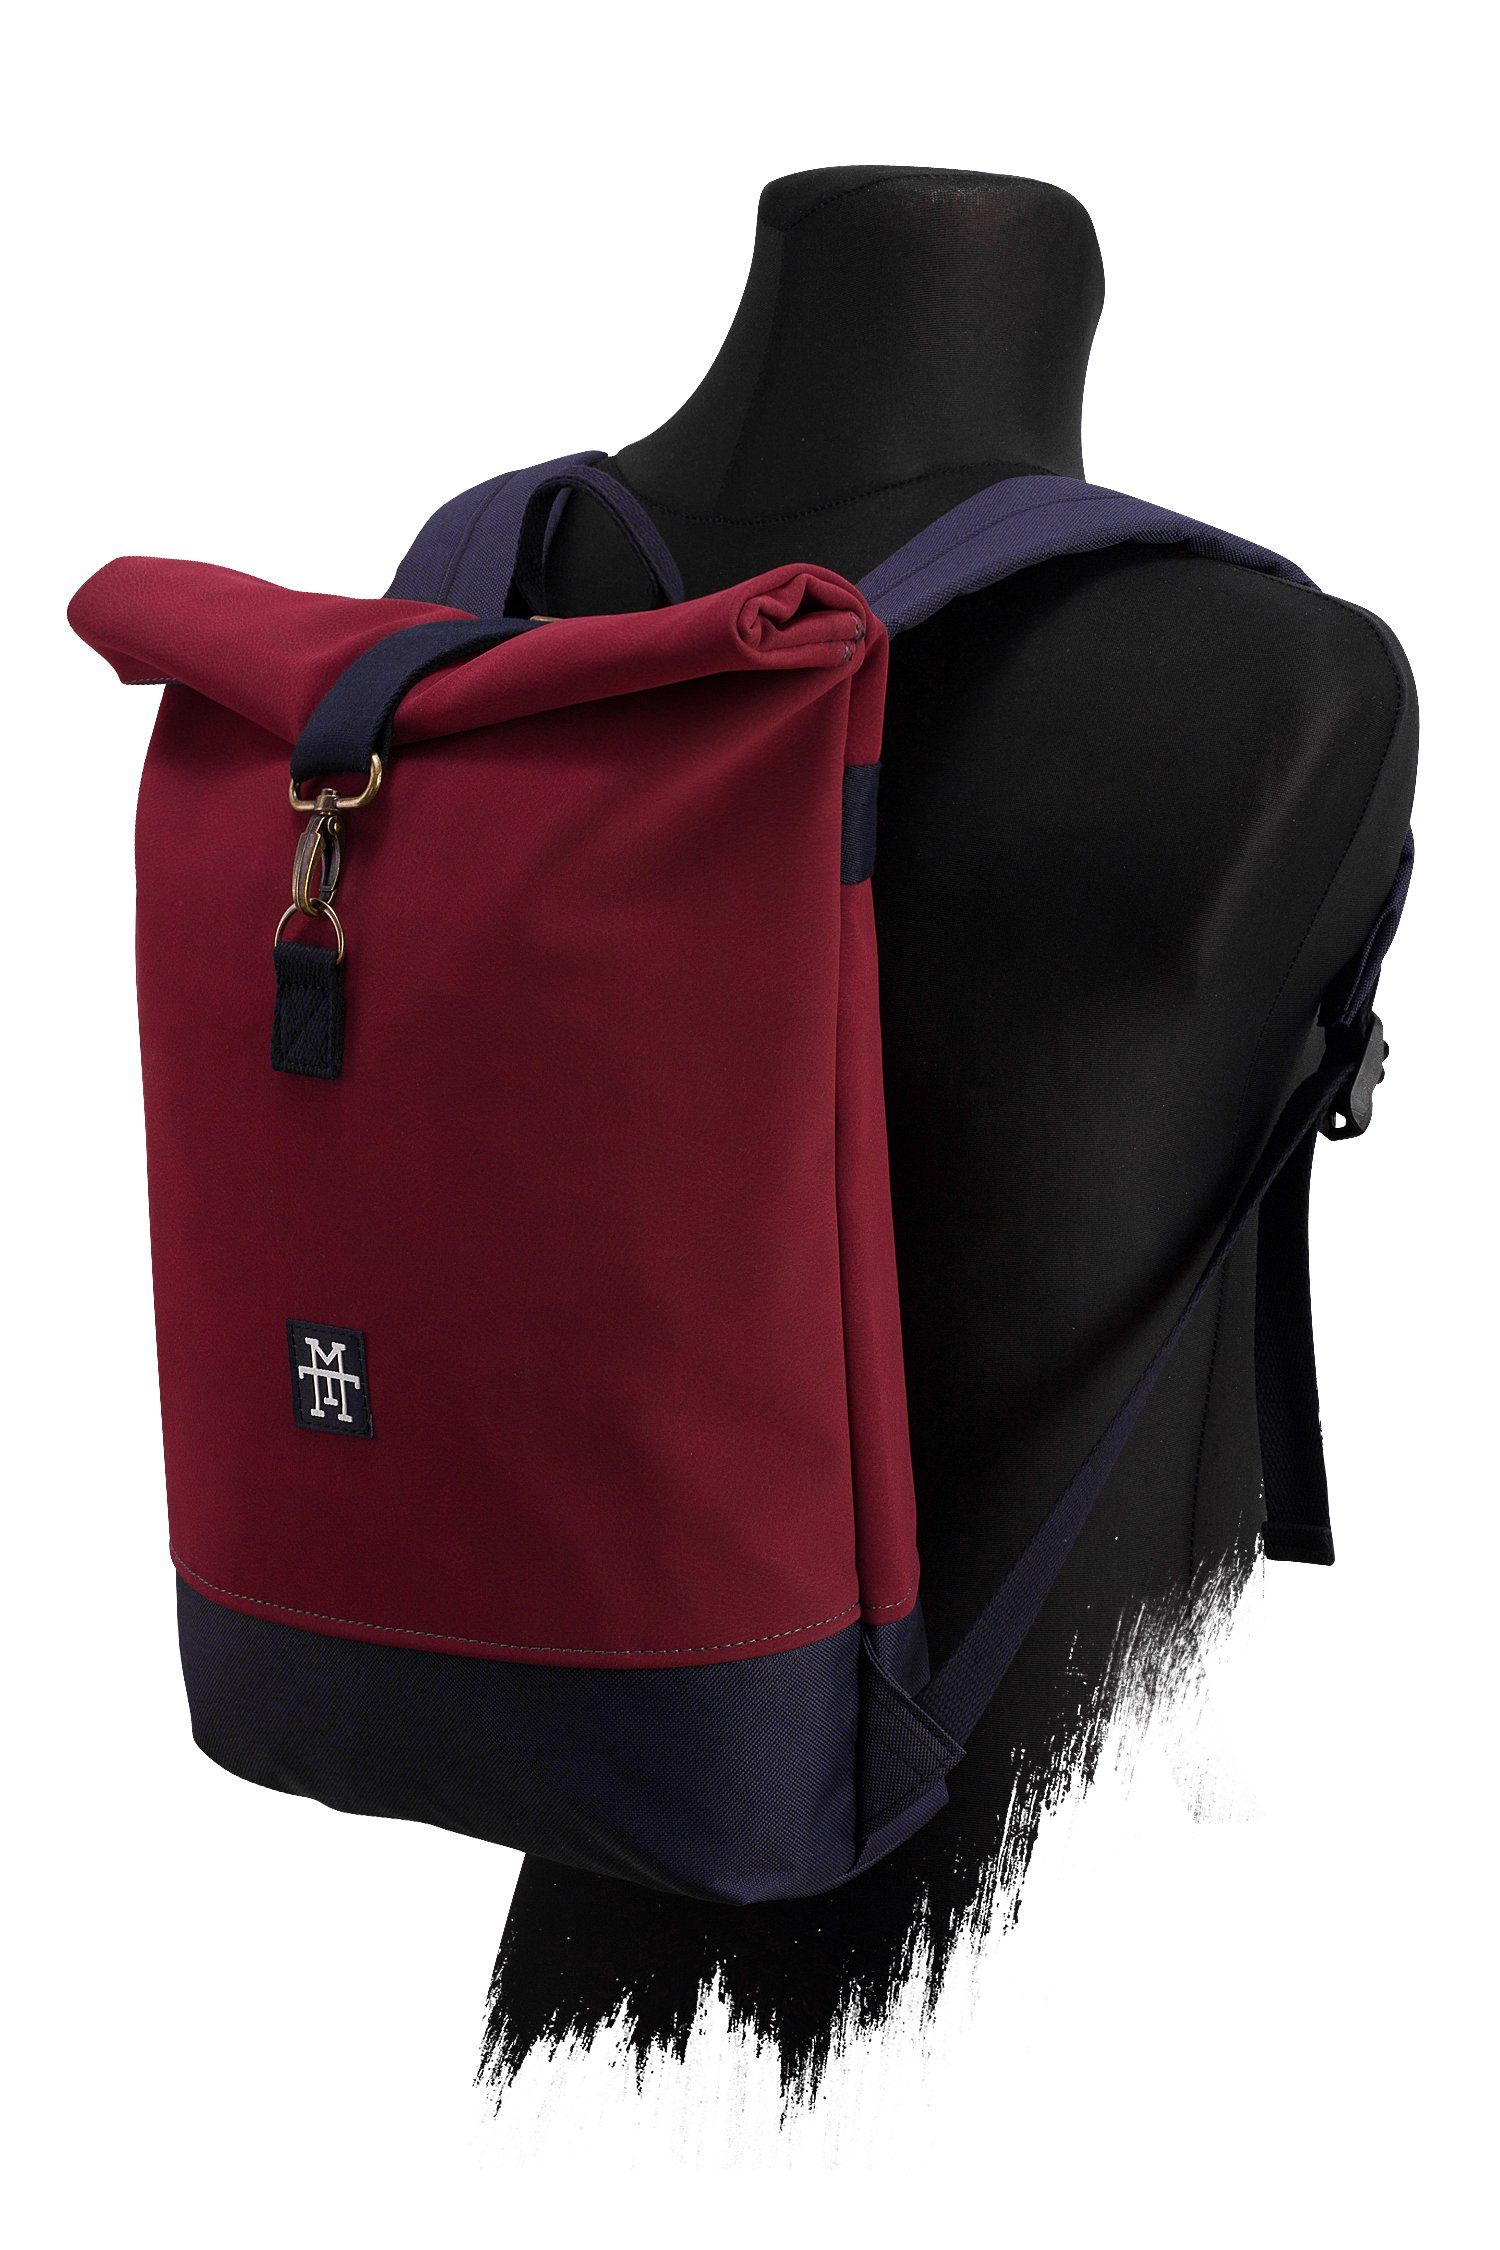 Manufaktur13 Tagesrucksack - Bordeaux Rucksack Backpack Gurte Rollverschluss, wasserdicht/wasserabweisend, Mini mit verstellbare Roll-Top